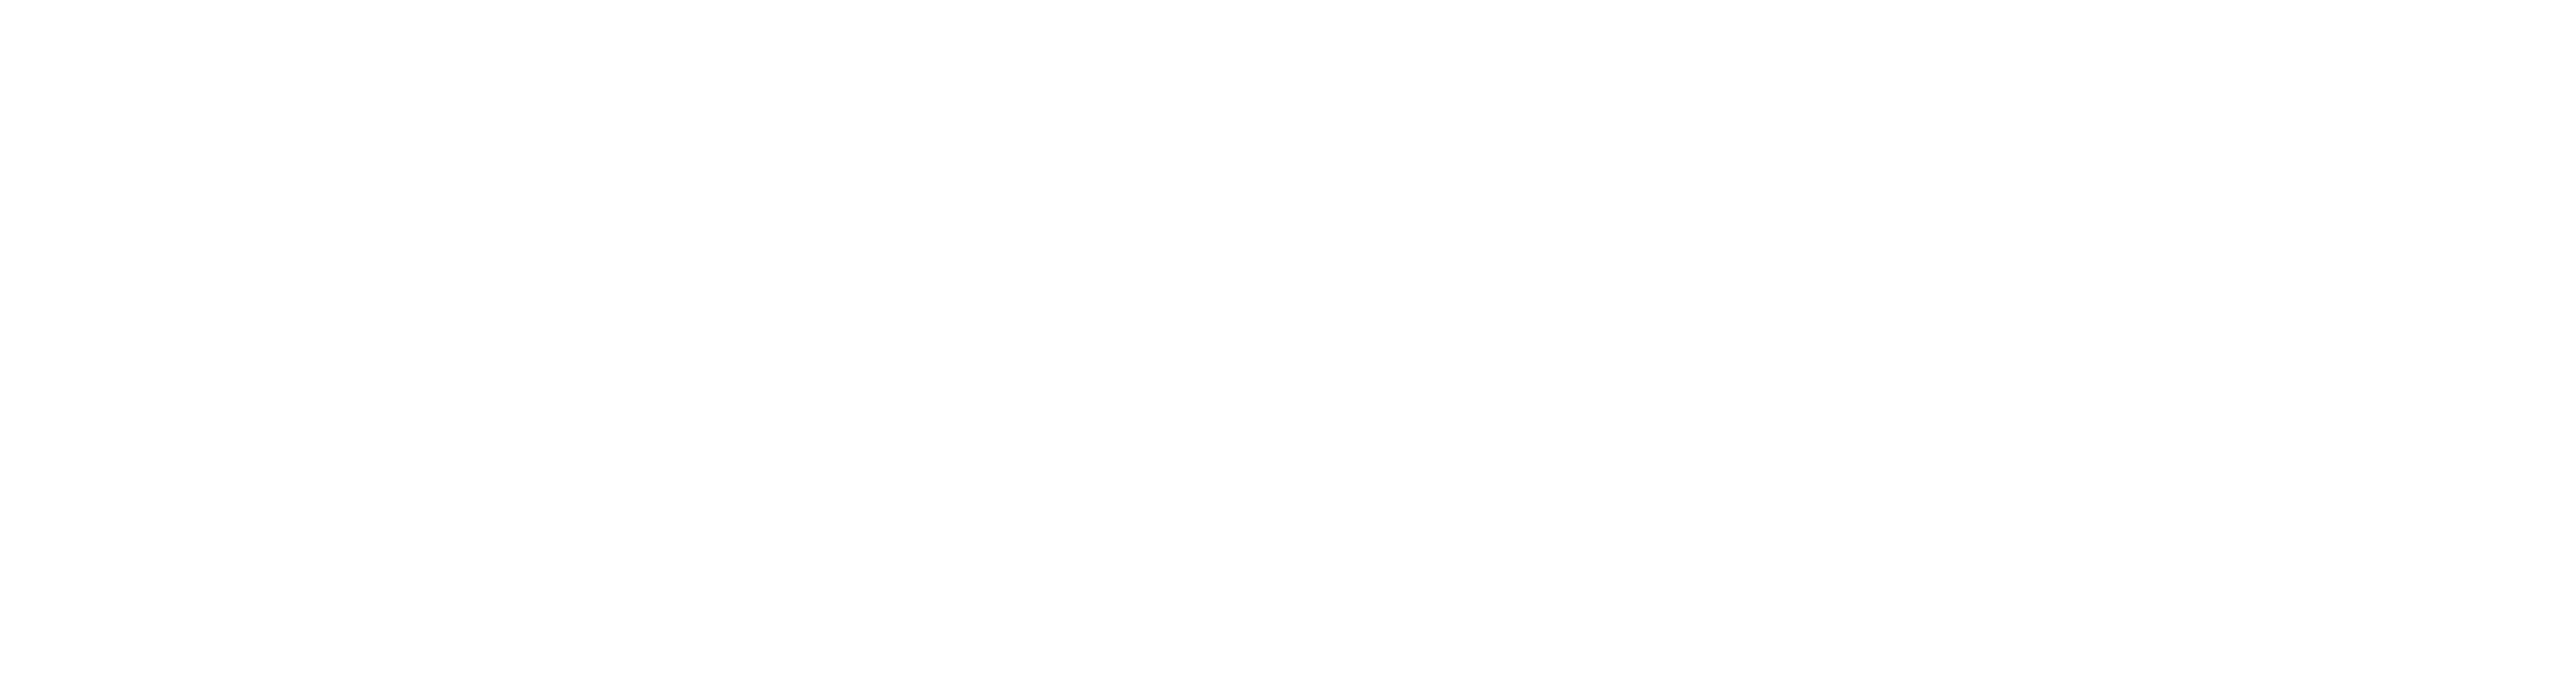 Logo HelpSpot (Blanc) - Intégrateur HubSpot